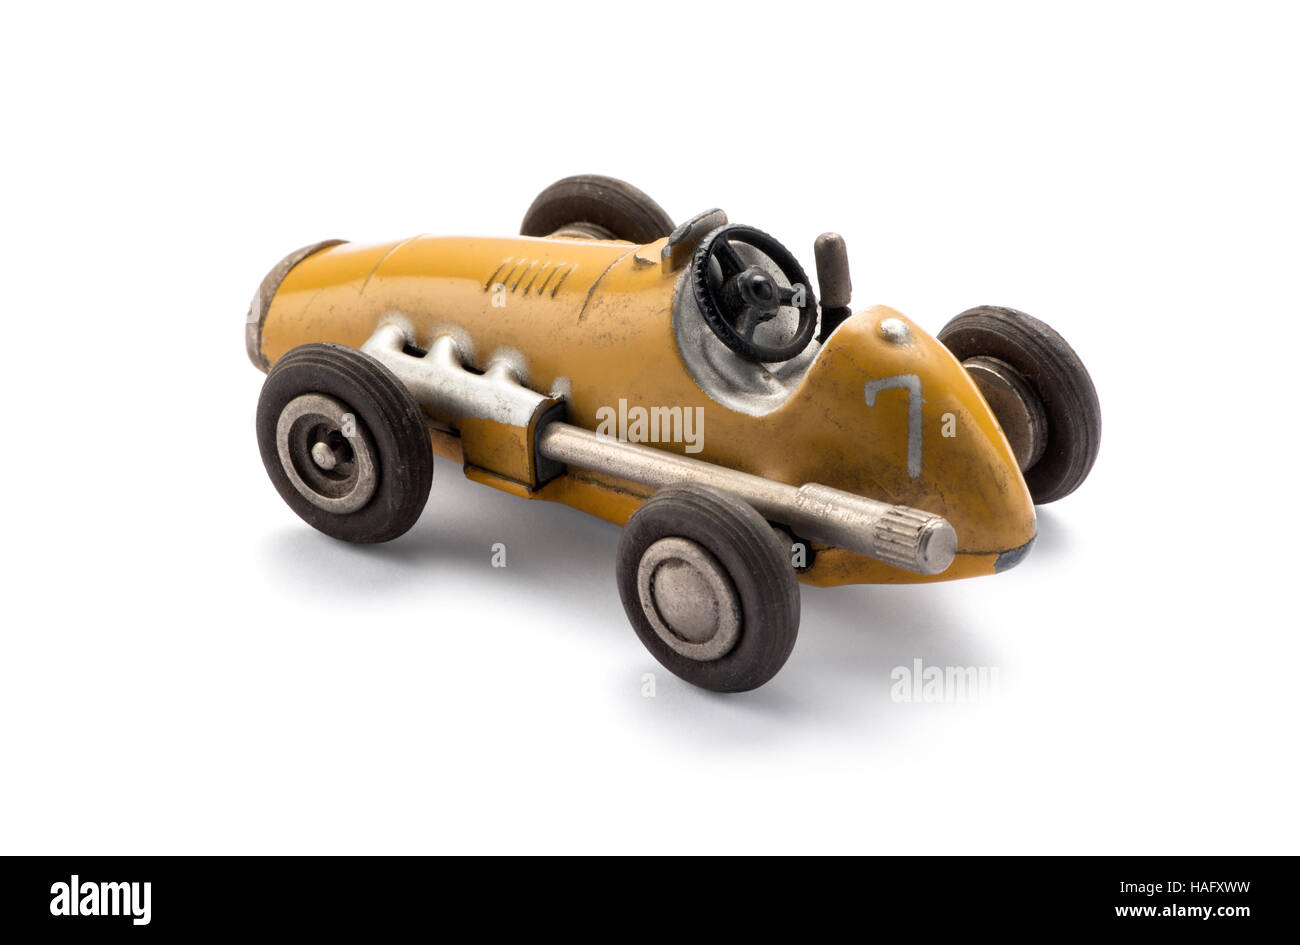 Modell gelb Spielzeug Oldtimer Rennwagen in einer Seitenansicht zeigt den großen Auspuff über einen weißen Hintergrund mit Schatten Stockfoto